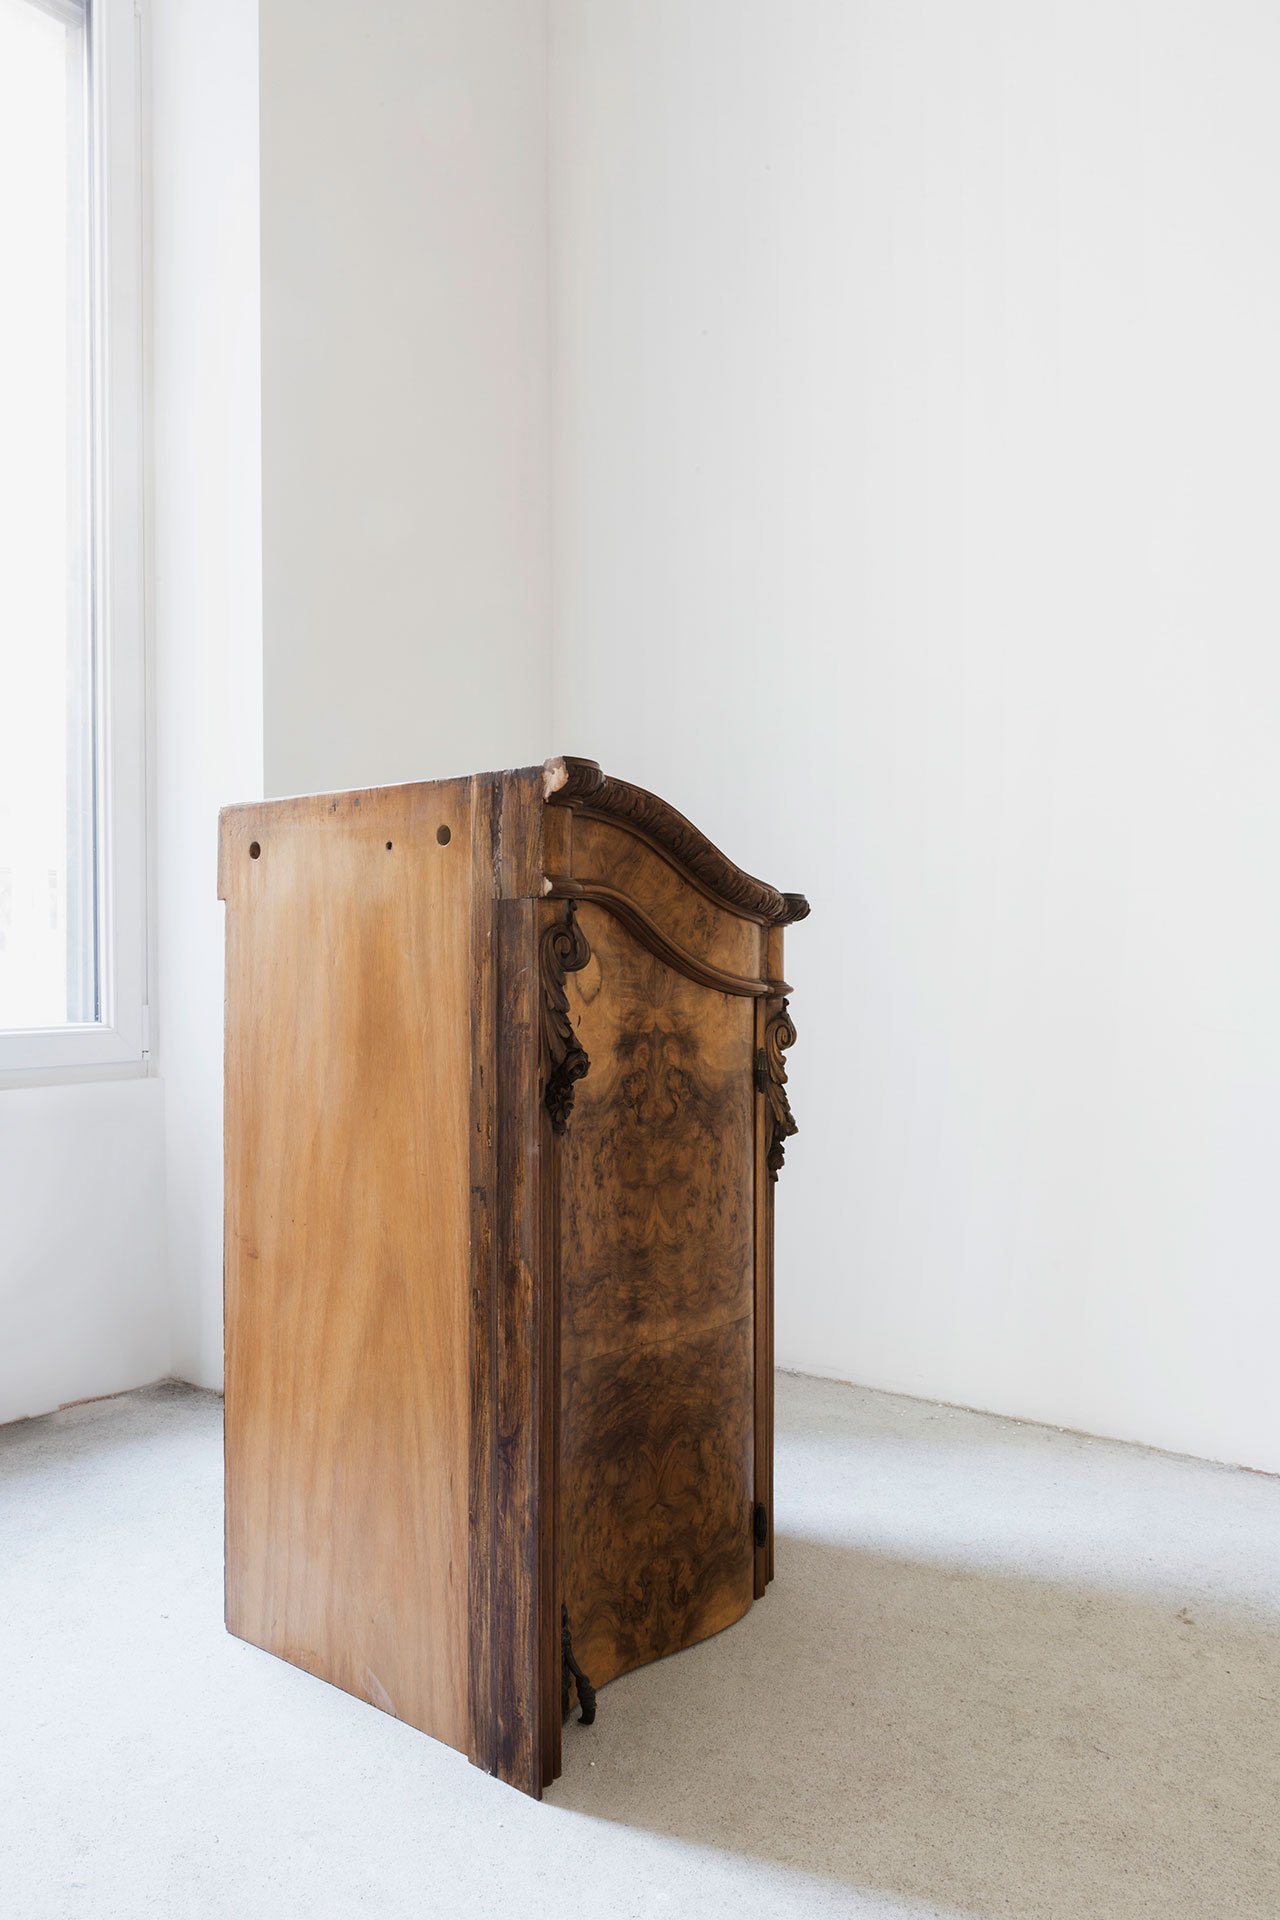 Nucleo (Piergiorgio Robino + Marzia Ricci), “Boolean” Not (Cabinet), 2017. Concrete, vintage furniture, 61 x 67,5 x 108h cm. Unique piece in an edition 1+1. Photo by Studio Pepe Fotografia.